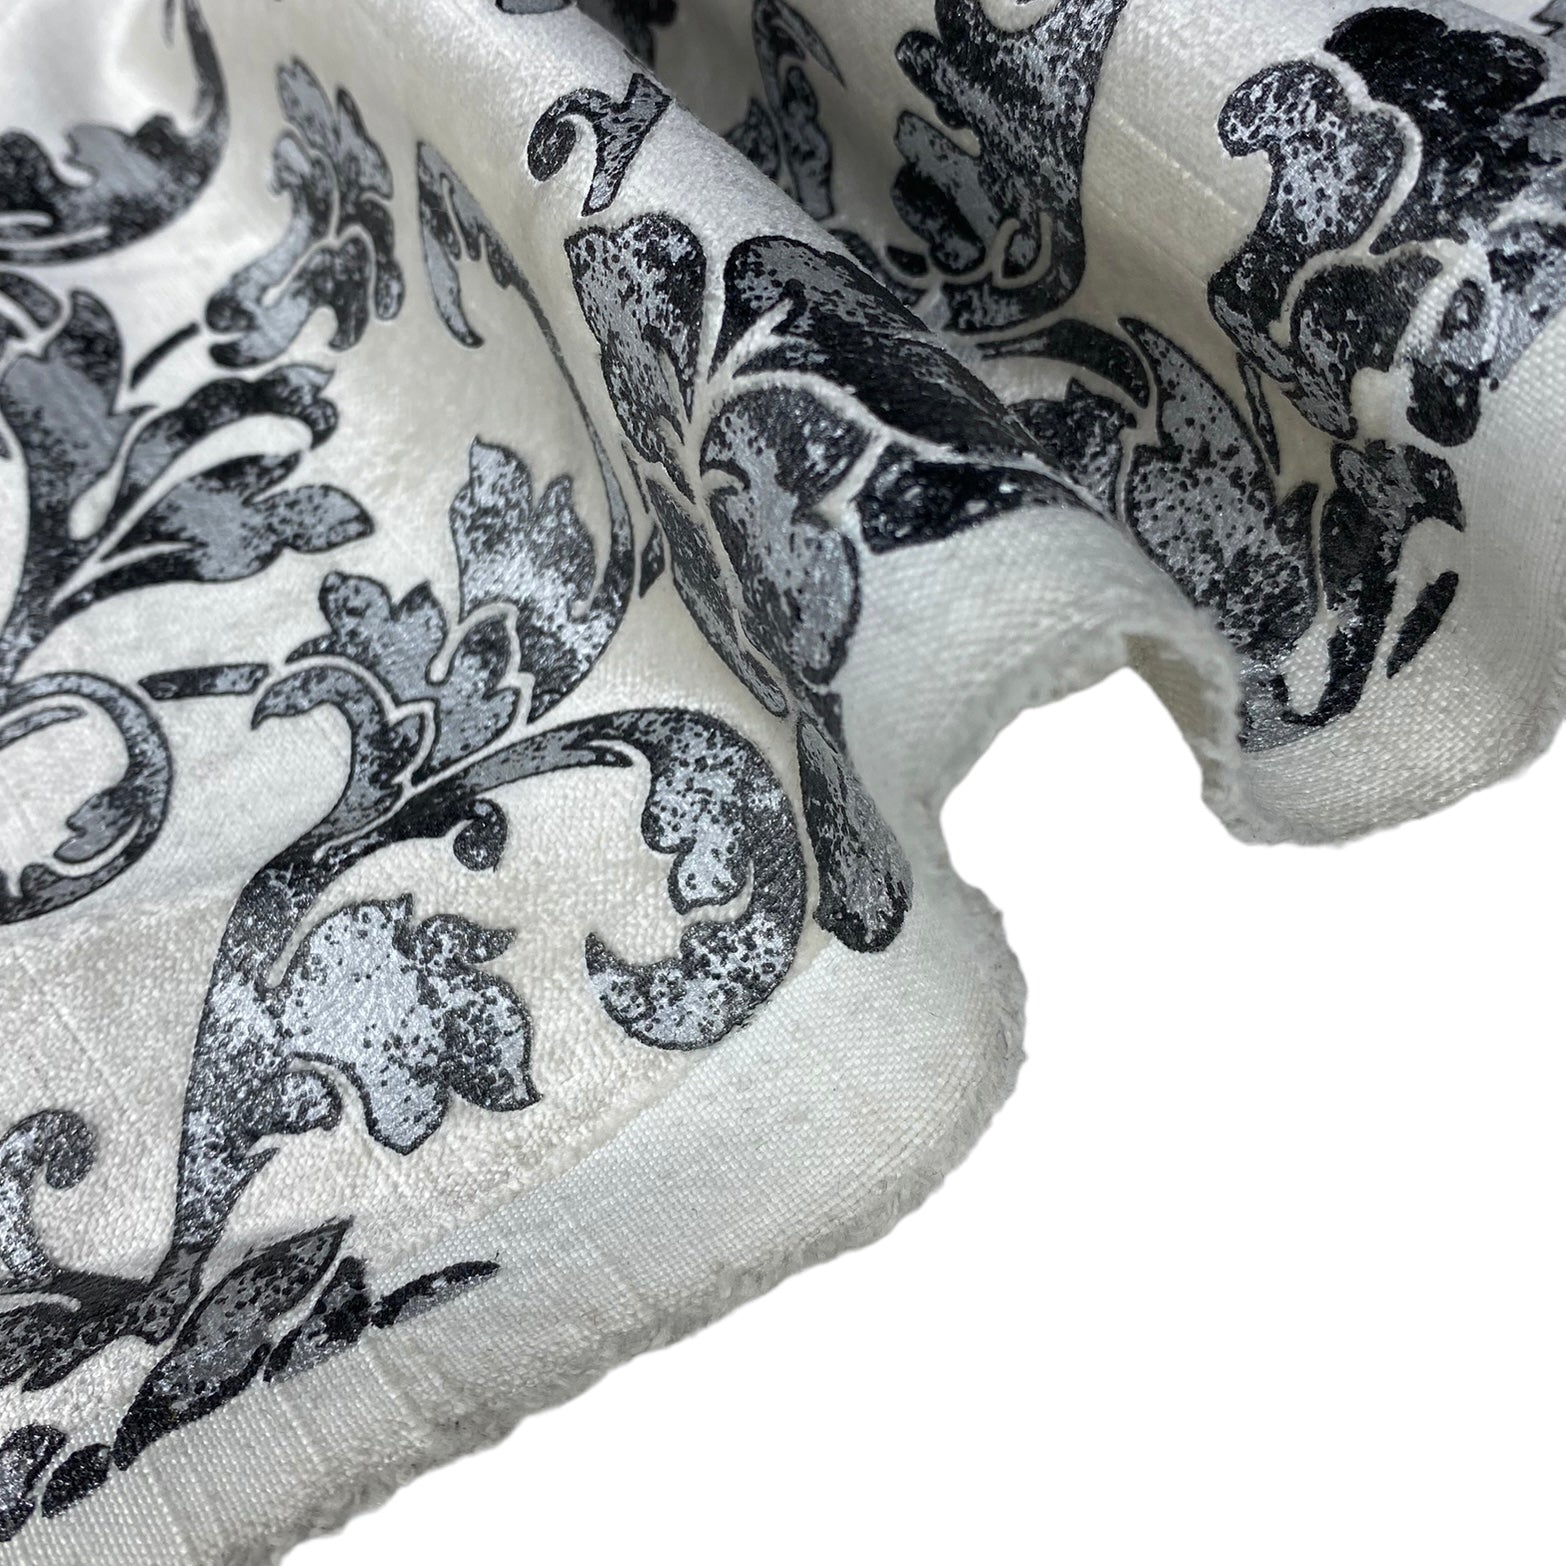 Printed Velvet Upholstery Designer Remnant  - Off White/Grey